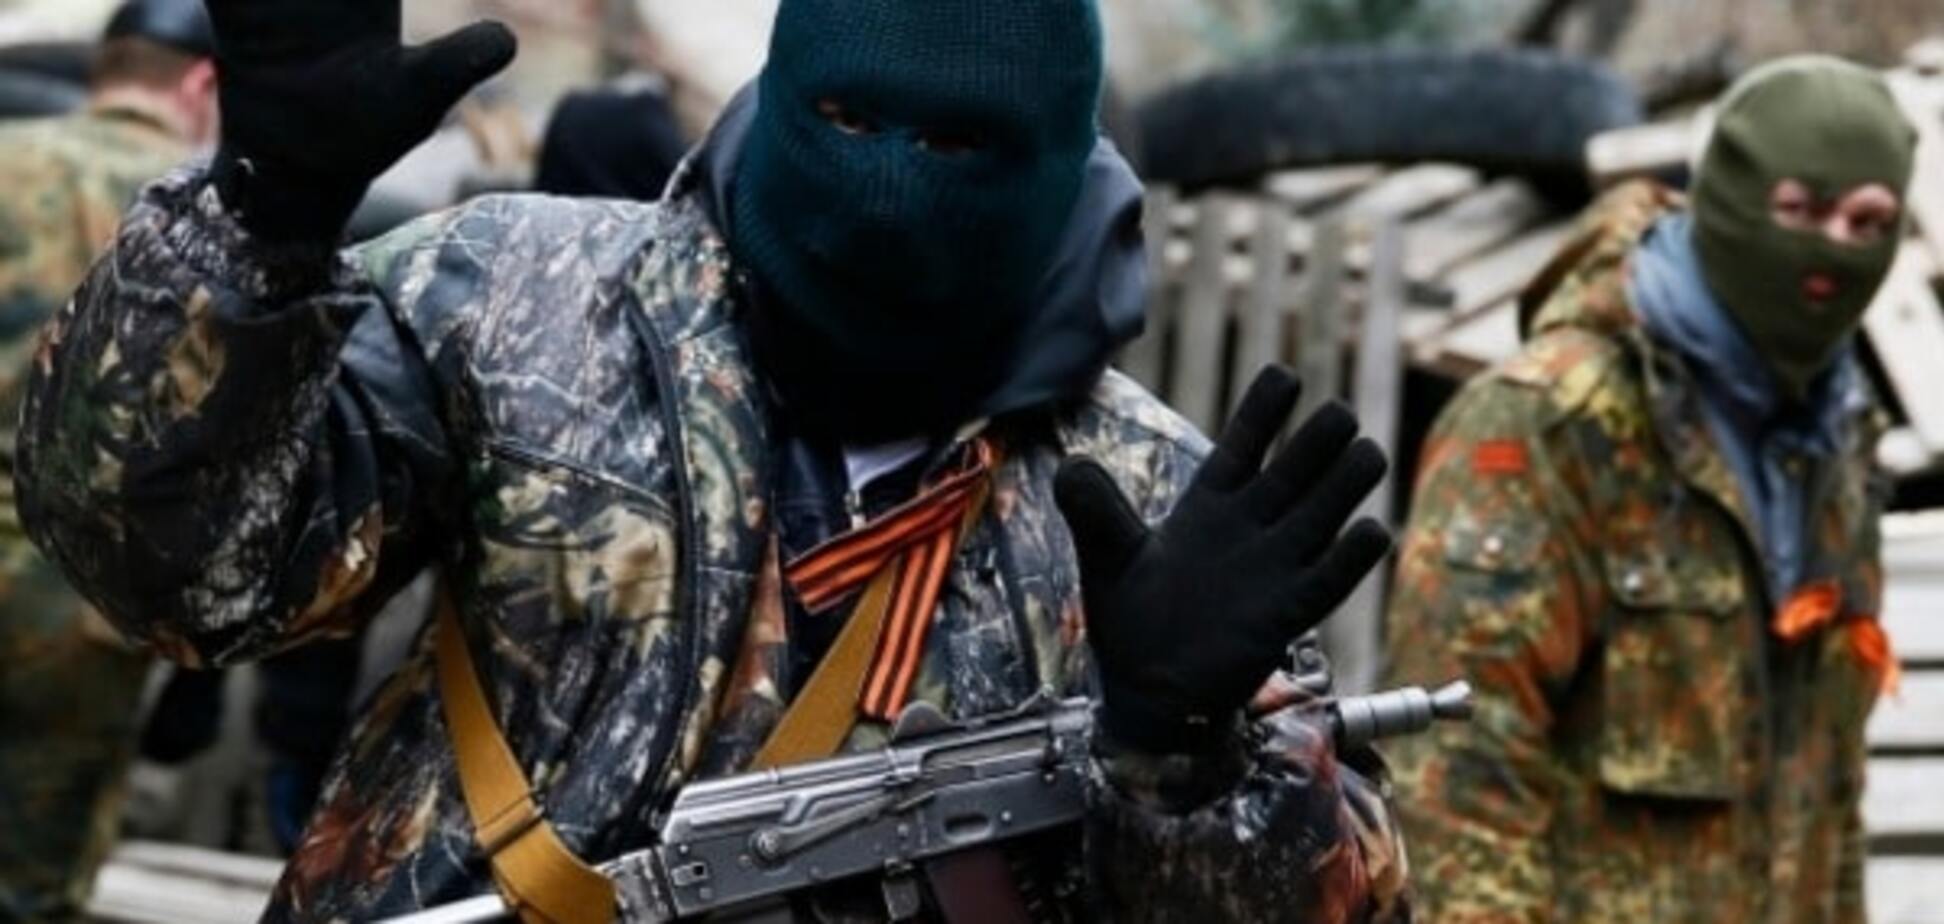 Вояки Путина начали воровать на продажу оружие 'армии ДНР'